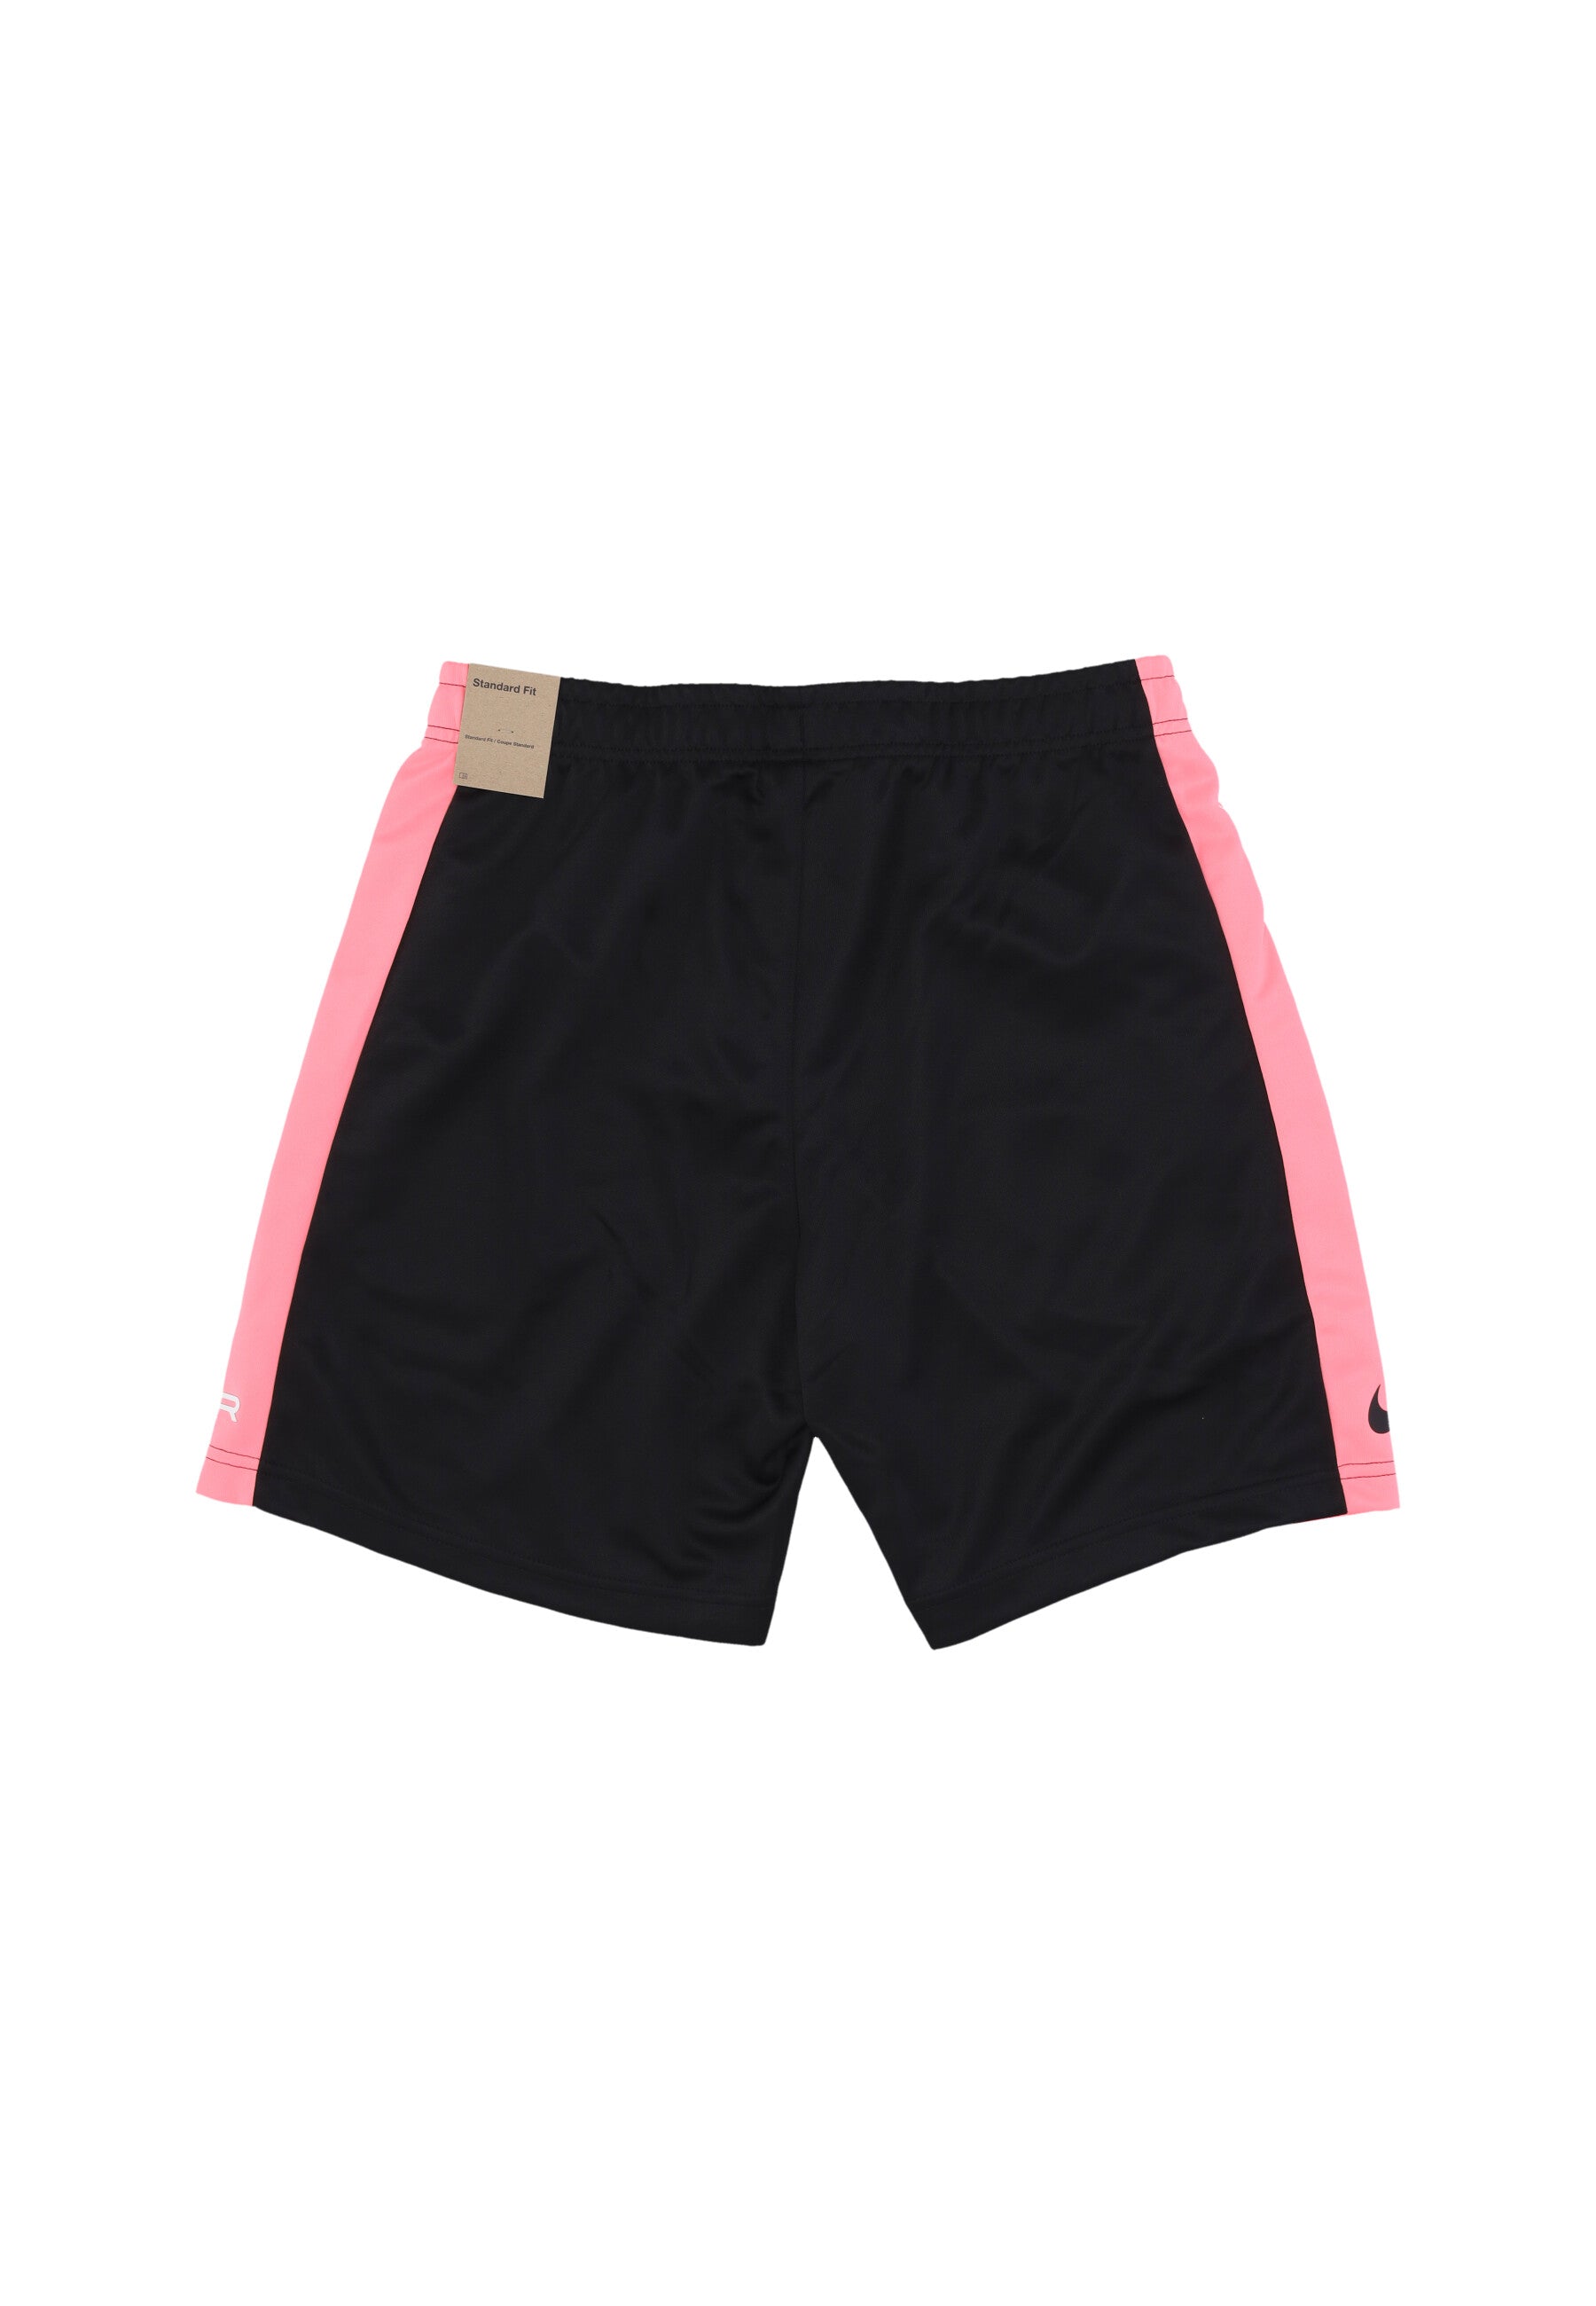 Pantaloncino Uomo Sportswear Air Pk Short Black/pink Foam HF5528-010